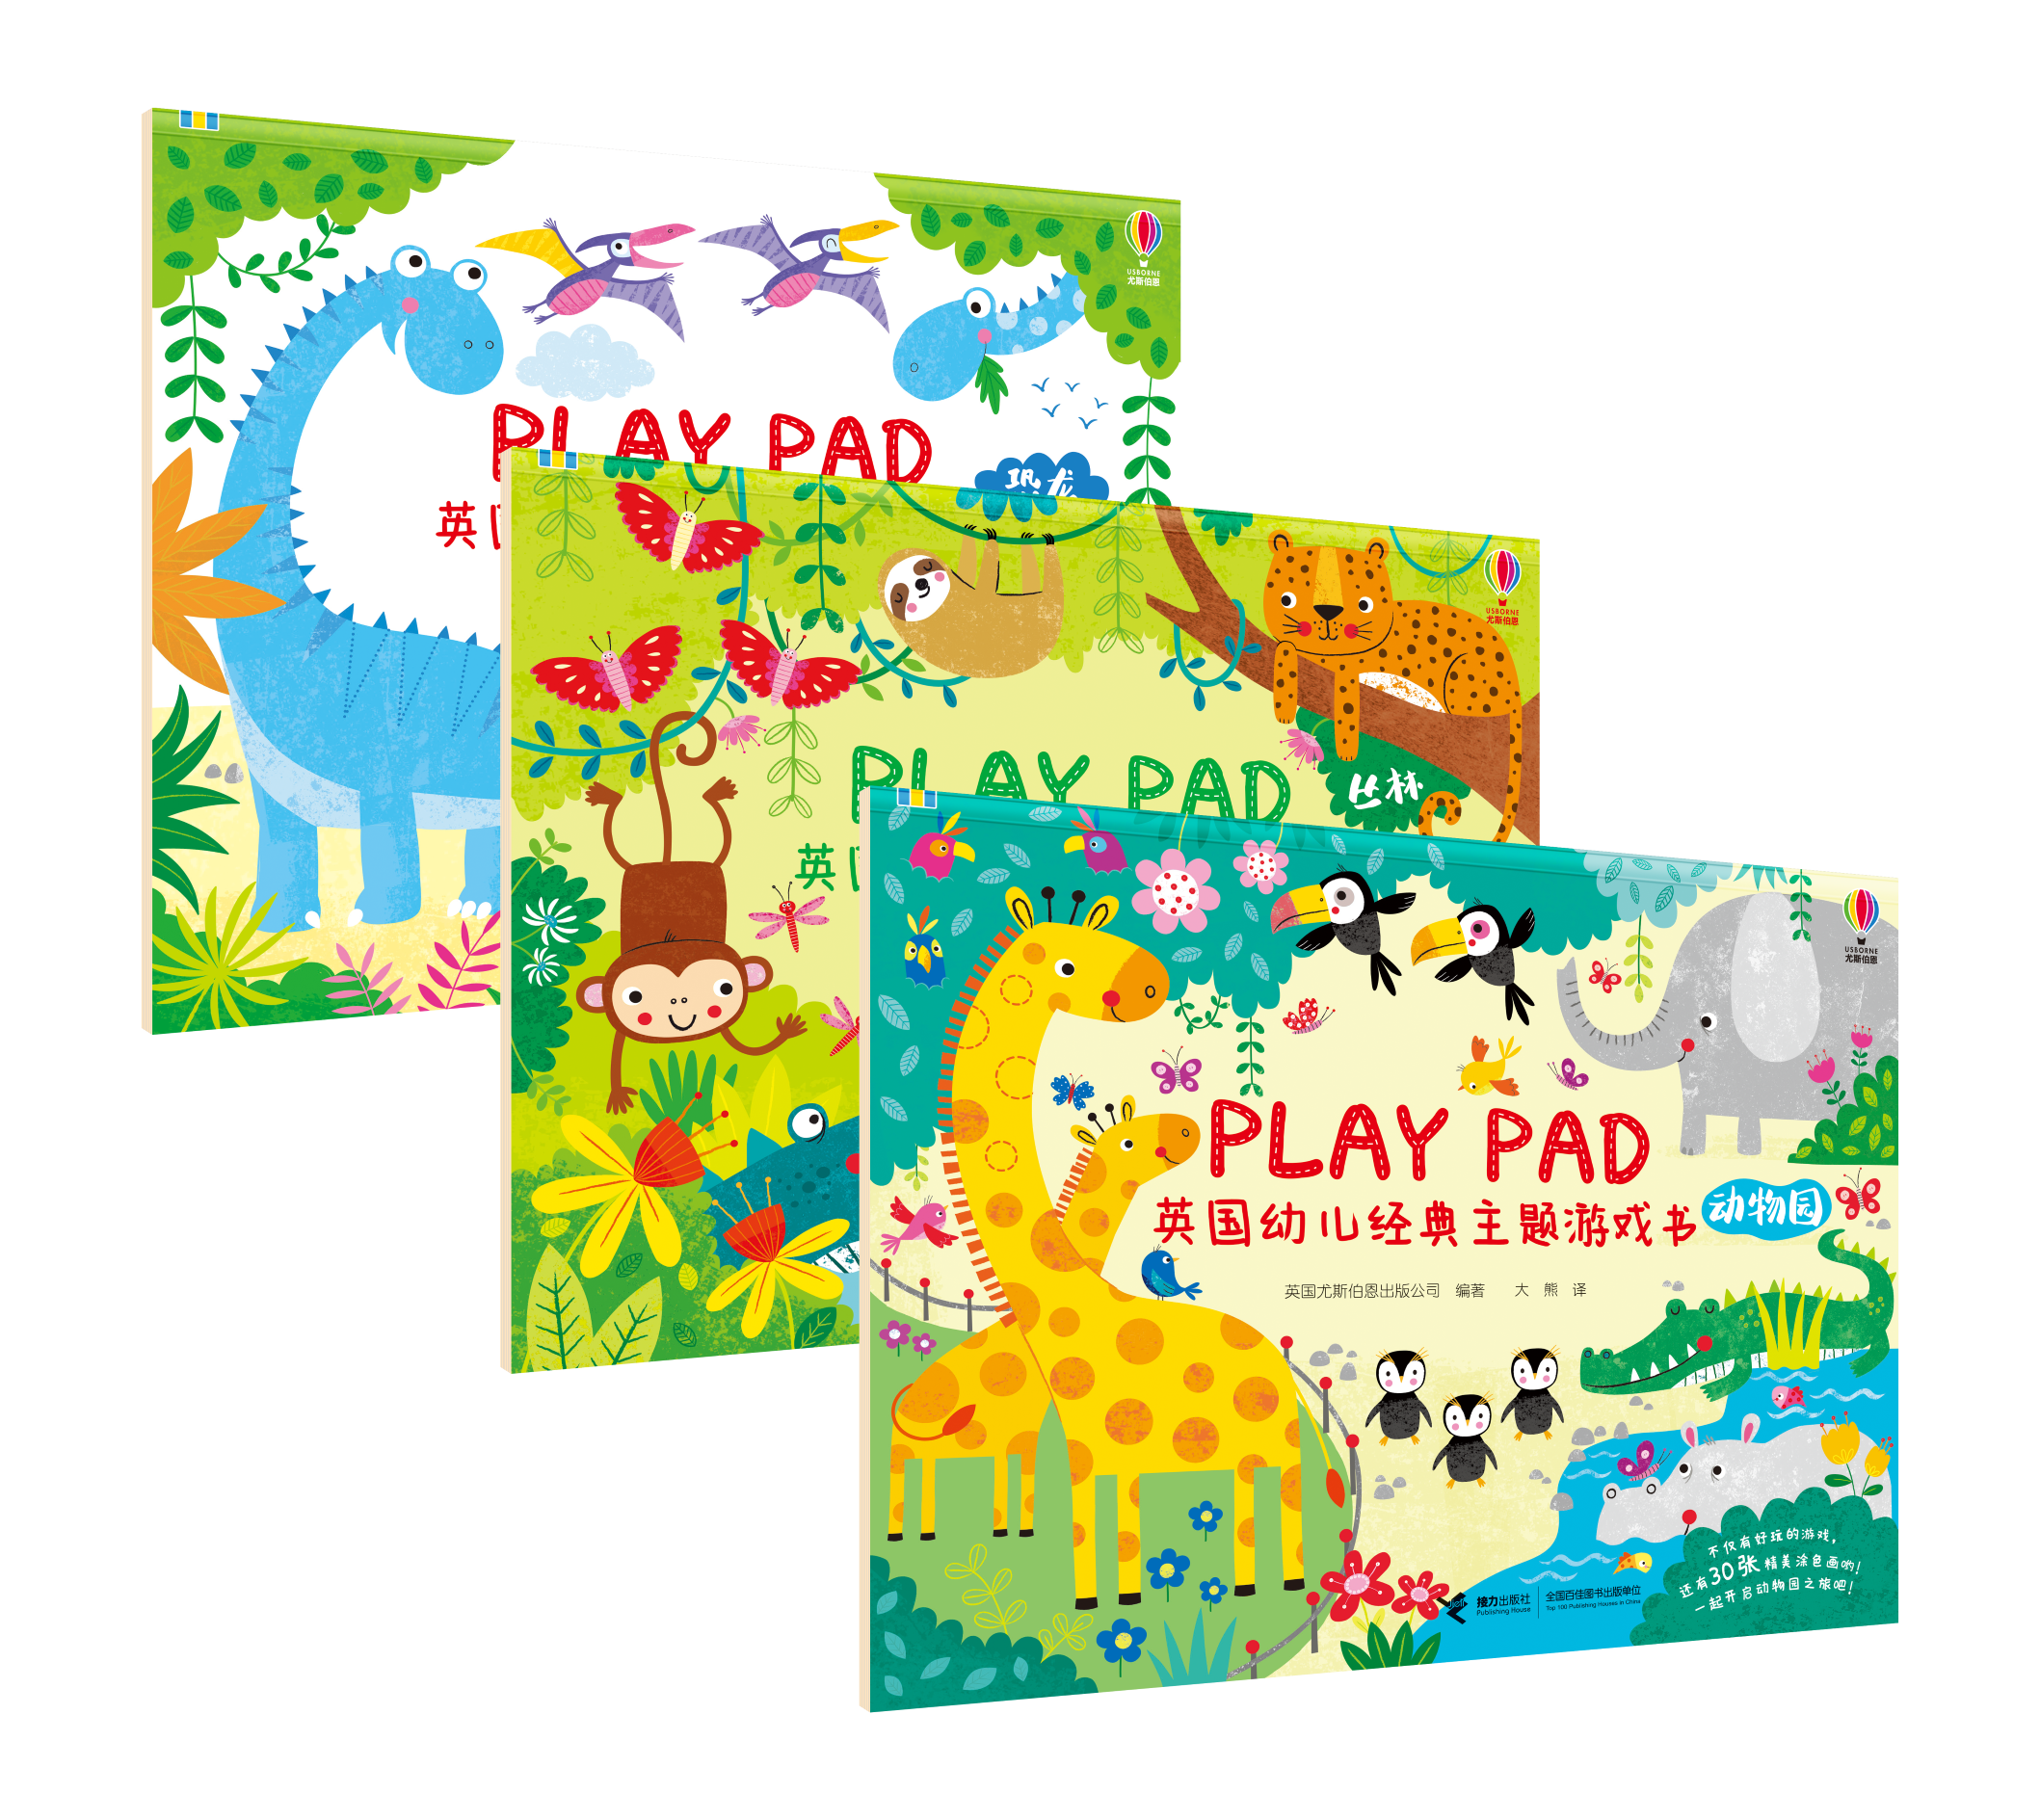 < Play pad百变游戏书> 专为2-6岁儿童精心设计的综合益智游戏书。每册都有32个游戏场景，包含10种游戏形式，让孩子在欢乐游戏的过程中，增加了思考，动手的过程，多方面锻炼细致观察力和手眼协调能力，提高了专注力，想象力，创造力，空间感受力和逻辑思维能力。附有场景涂色还能培养孩子的色彩运用和配色方面的艺术审美能力。  